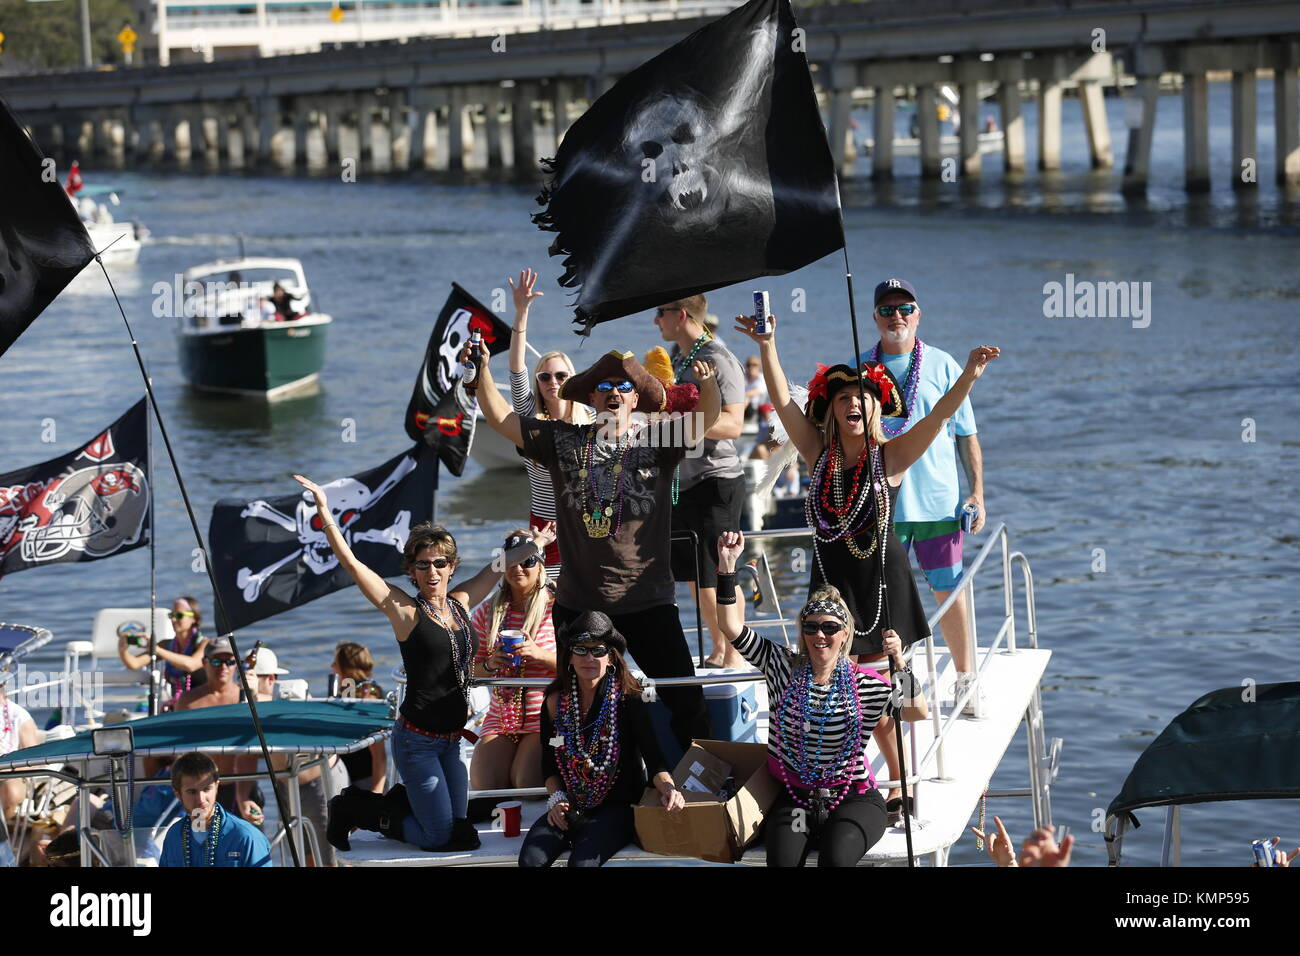 Bootsfahrer versammeln sich in Tampa Bay entlang Bayshore Boulevard in Tampa Gasparilla Pirate Invasion und Parade. Stockfoto